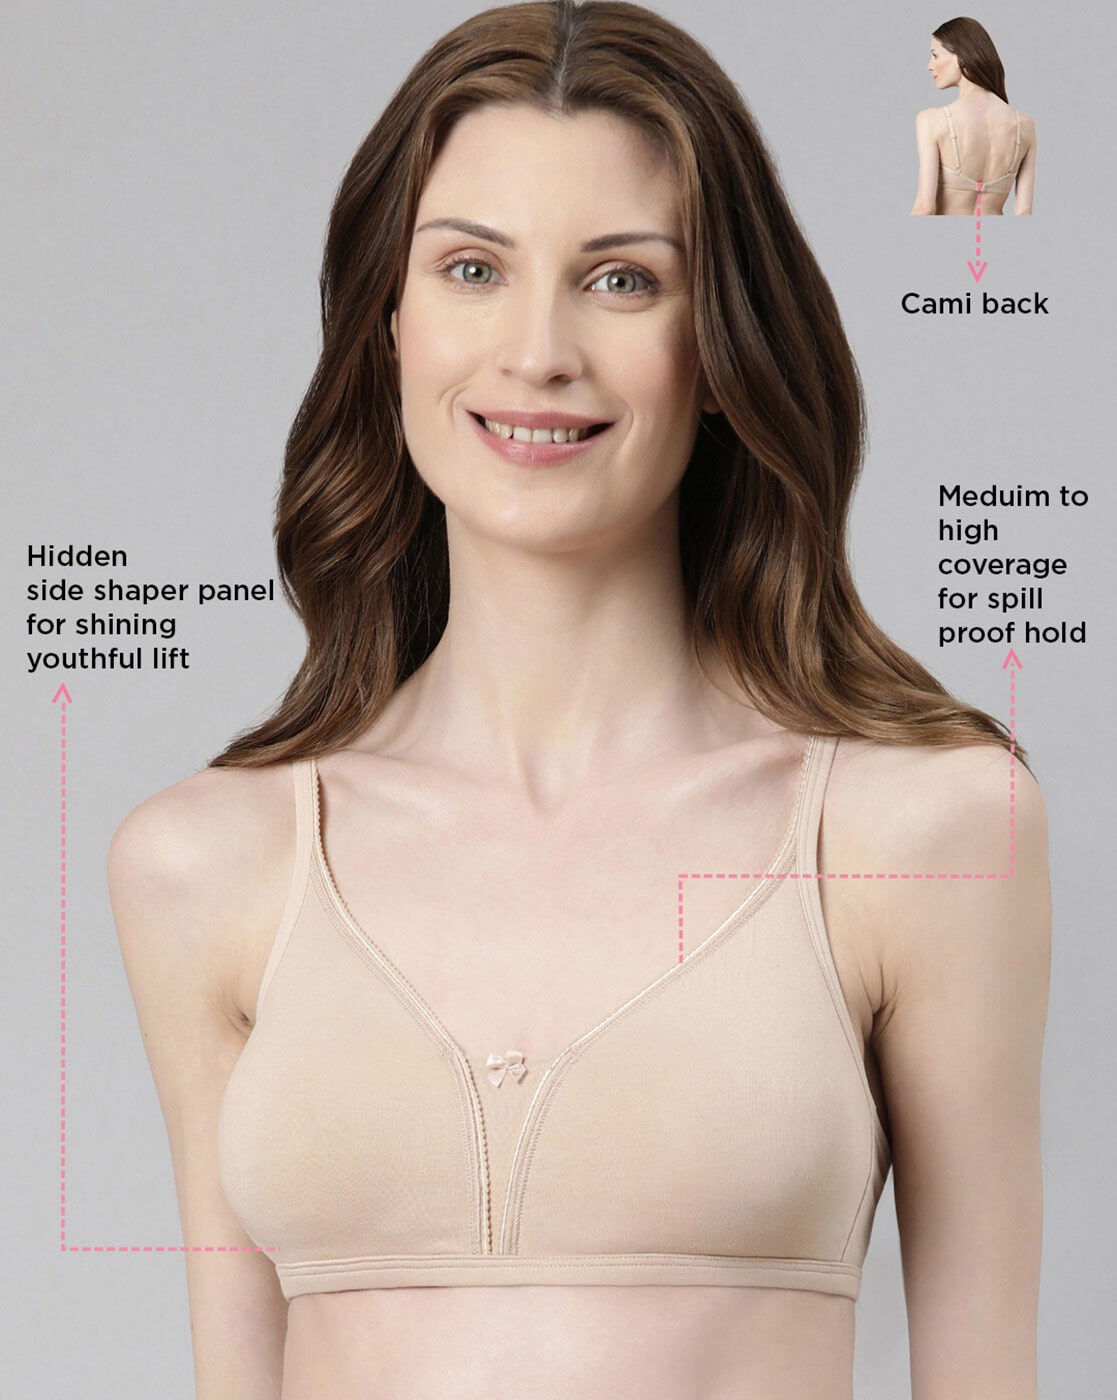 Buy Pale Skin Bras for Women by ENAMOR Online